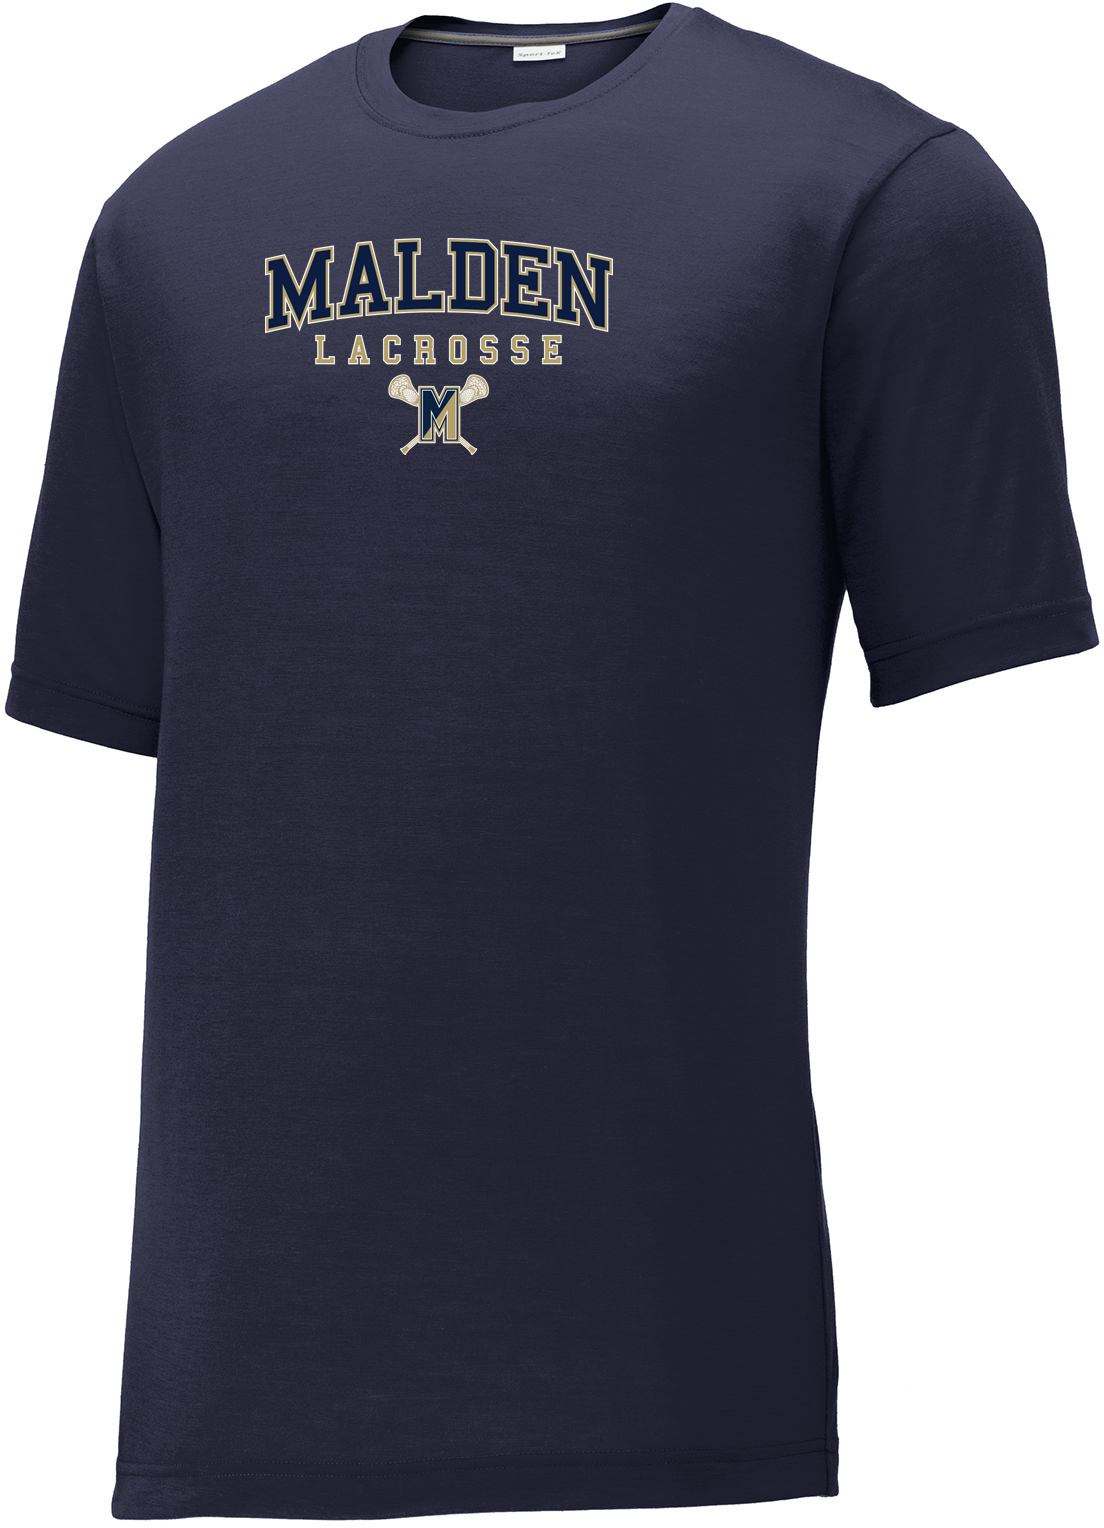 Malden Lacrosse CottonTouch Performance T-Shirt